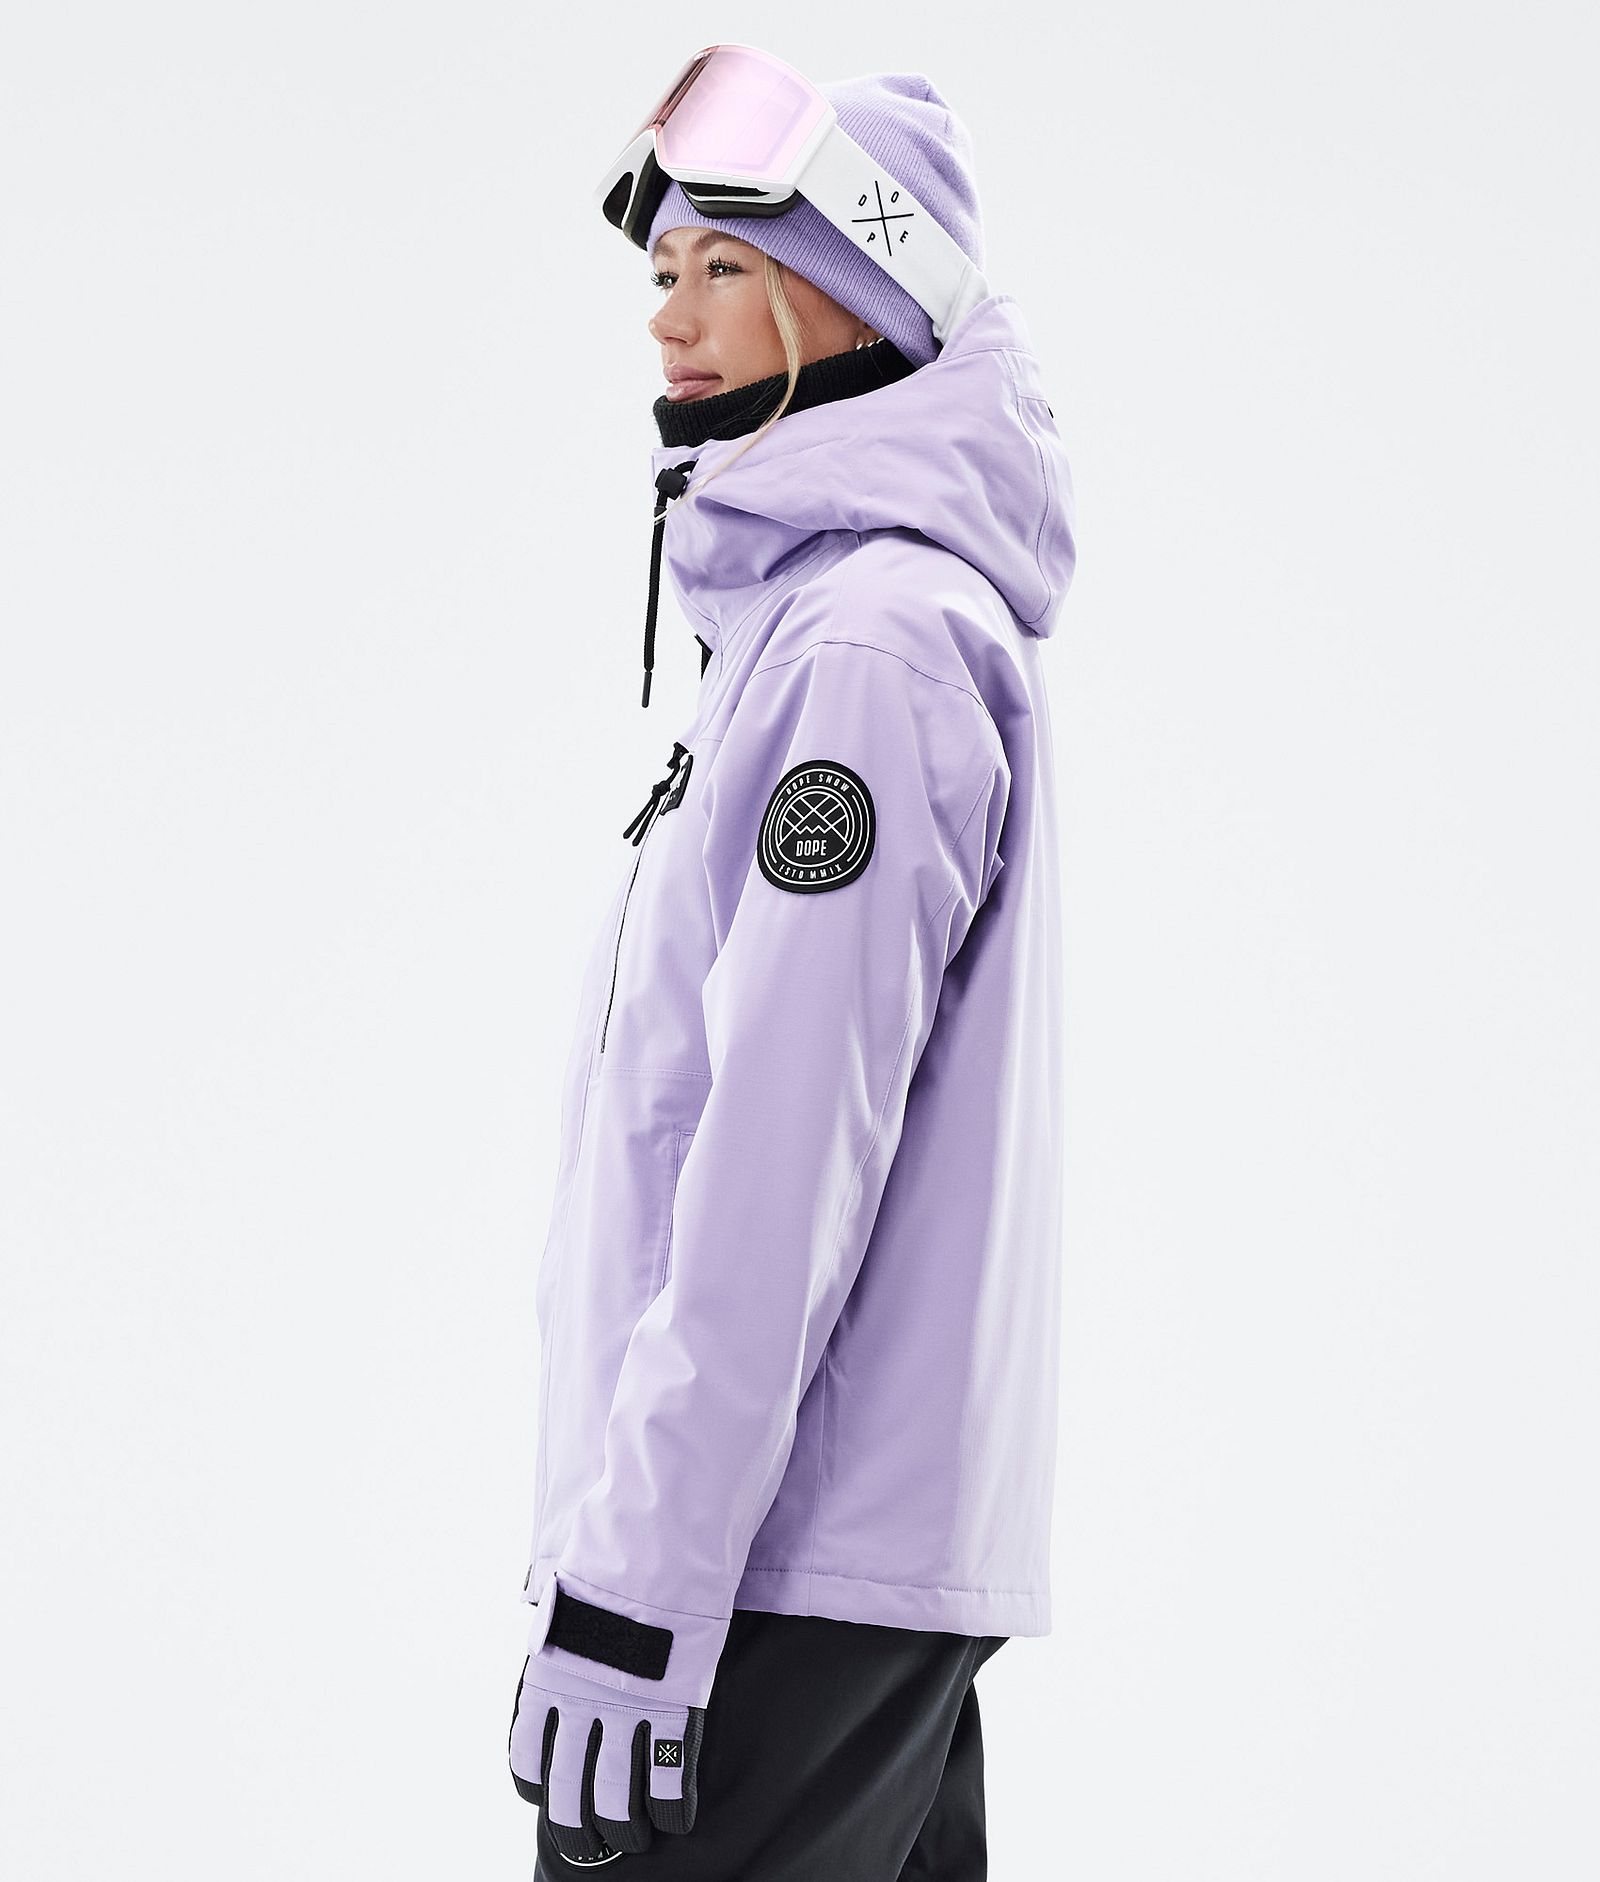 Blizzard W Full Zip Snowboard Jacket Women Faded Violet Renewed, Image 5 of 9